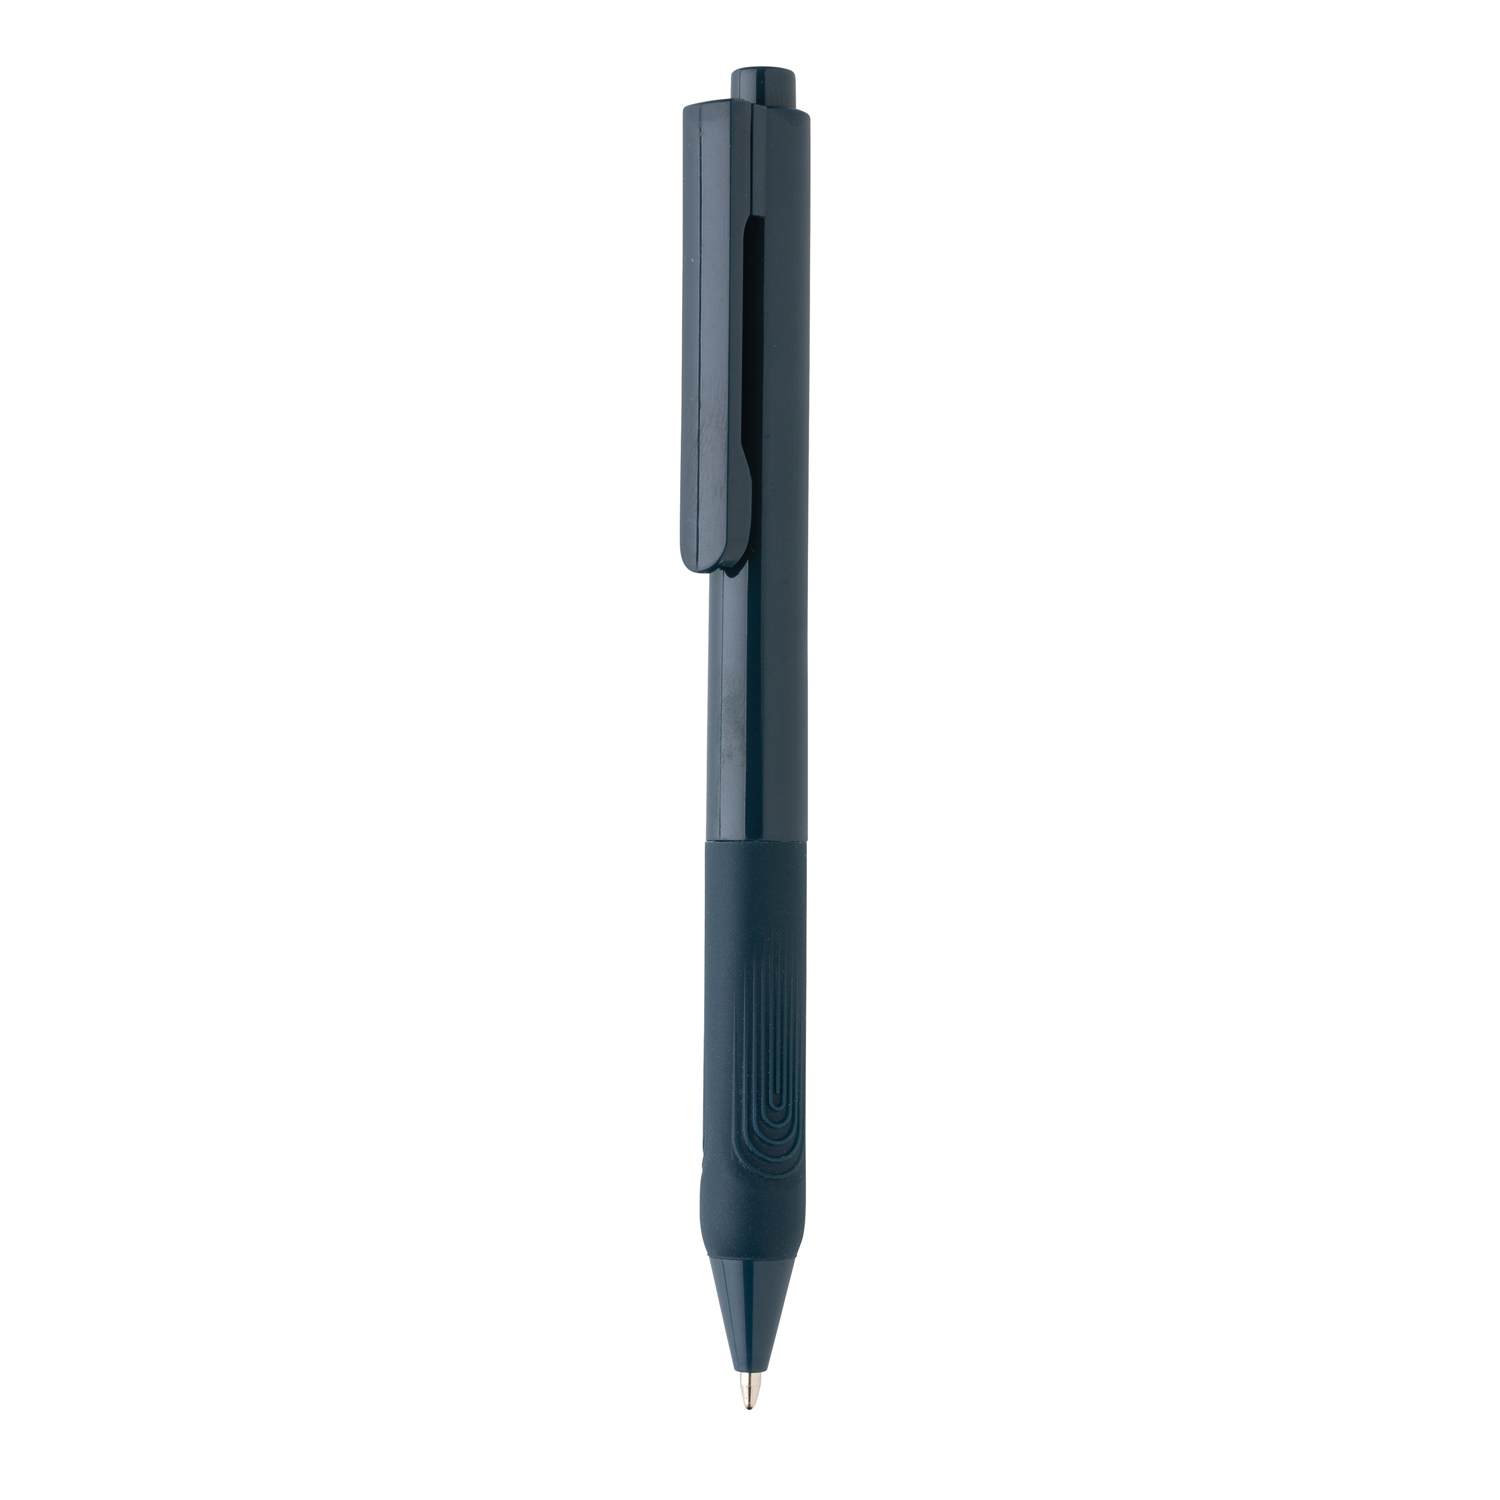 Артикул: XP610.829 — Ручка X9 с глянцевым корпусом и силиконовым грипом